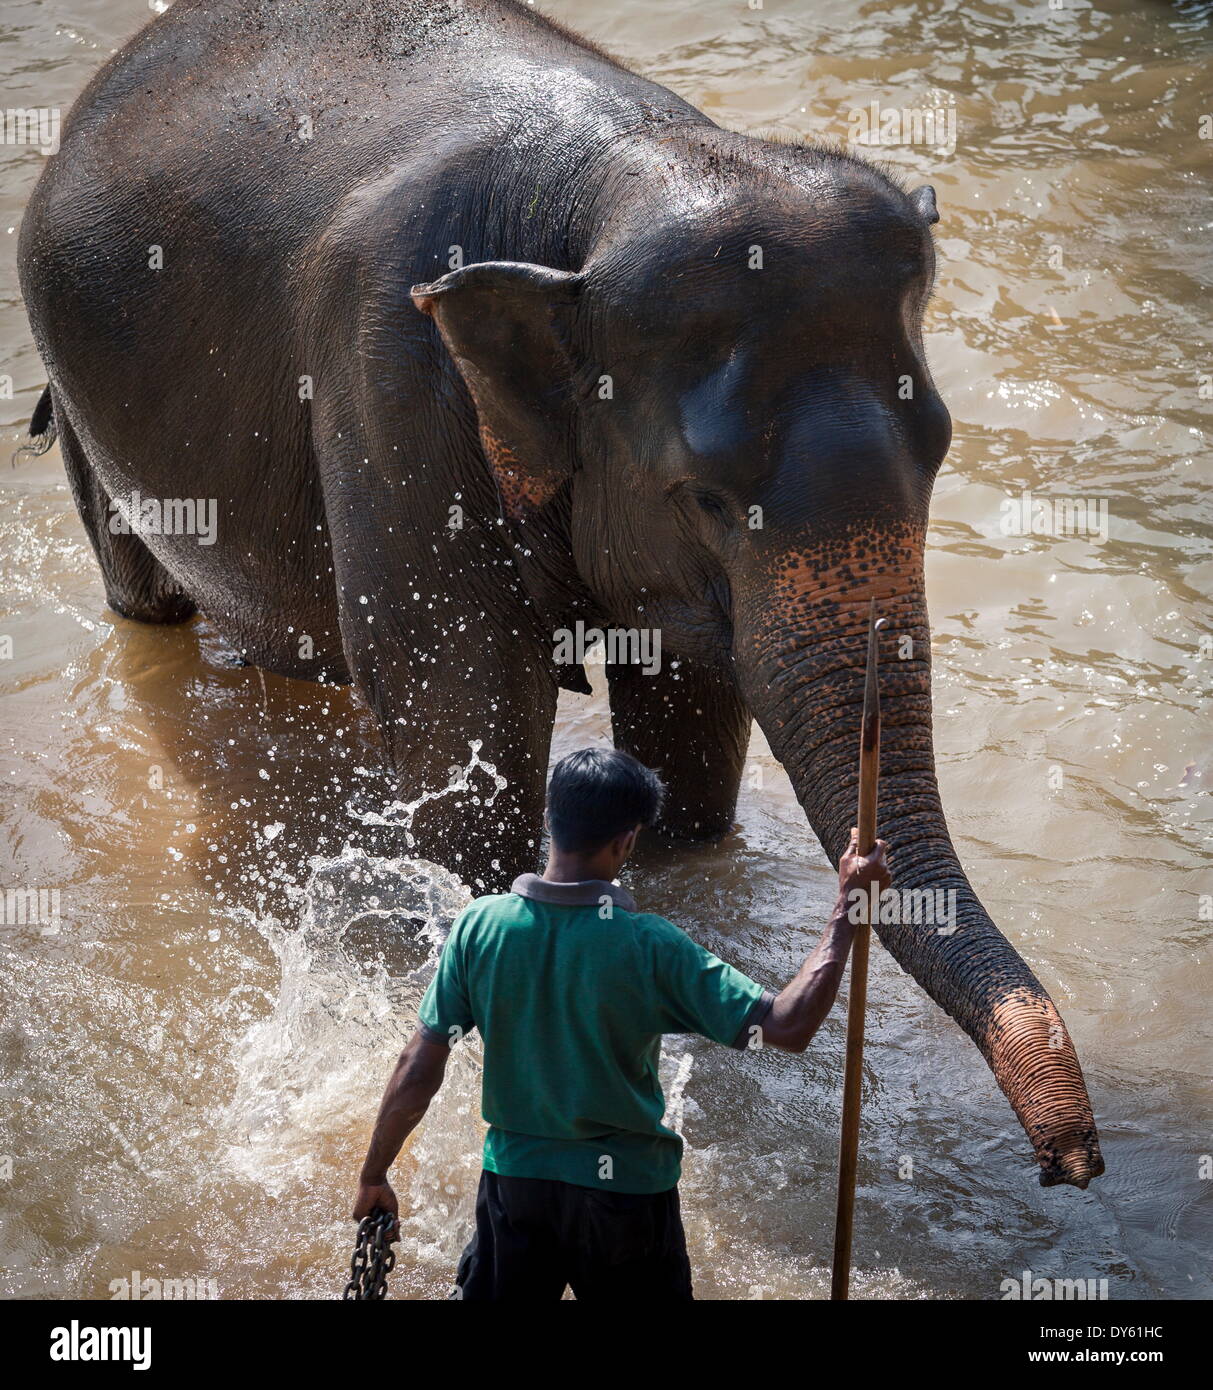 Un éléphant d'adultes (Elephantidae) se lave dans la rivière, Pinnewala orphelinat des éléphants, Sri Lanka, Asie Banque D'Images